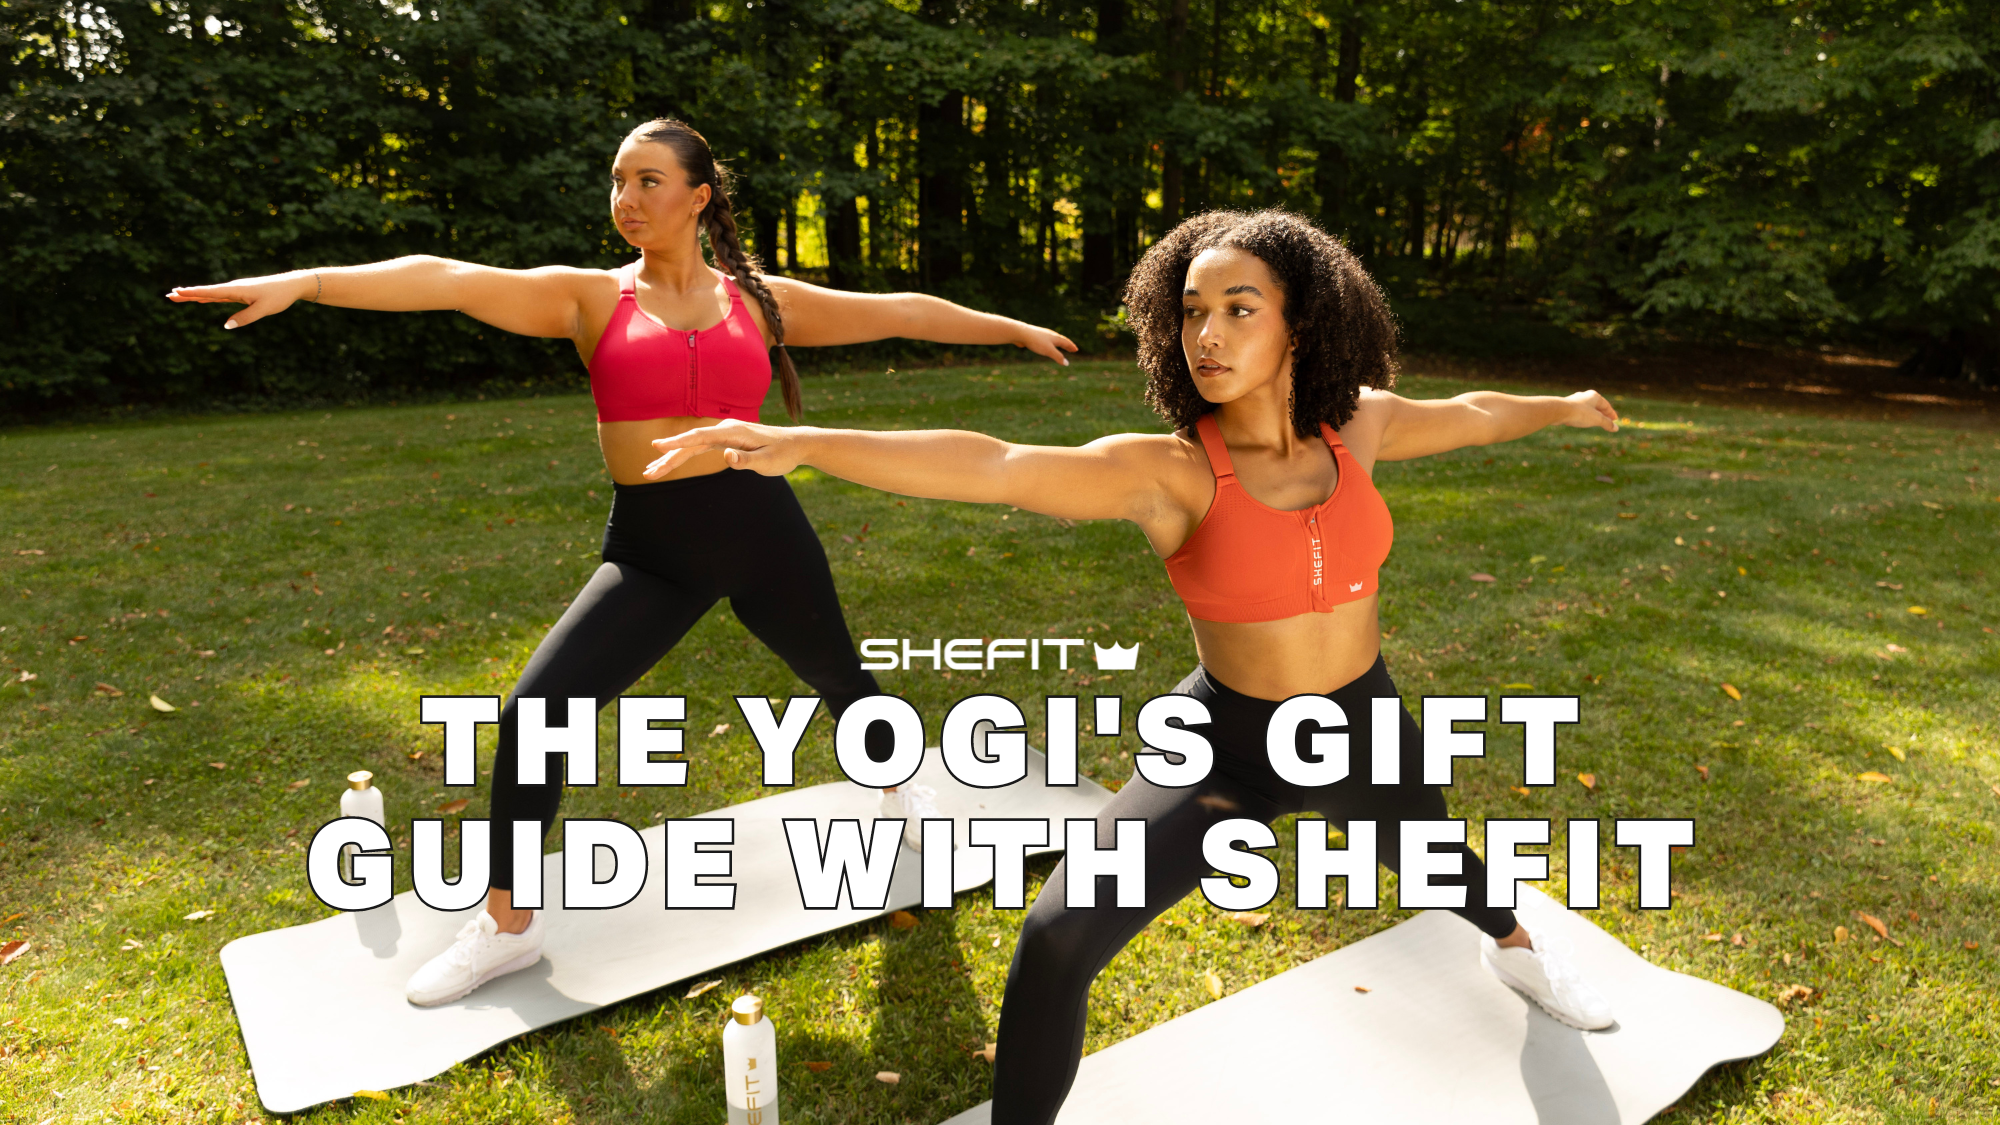 SHEFIT Yogi Gift Guide